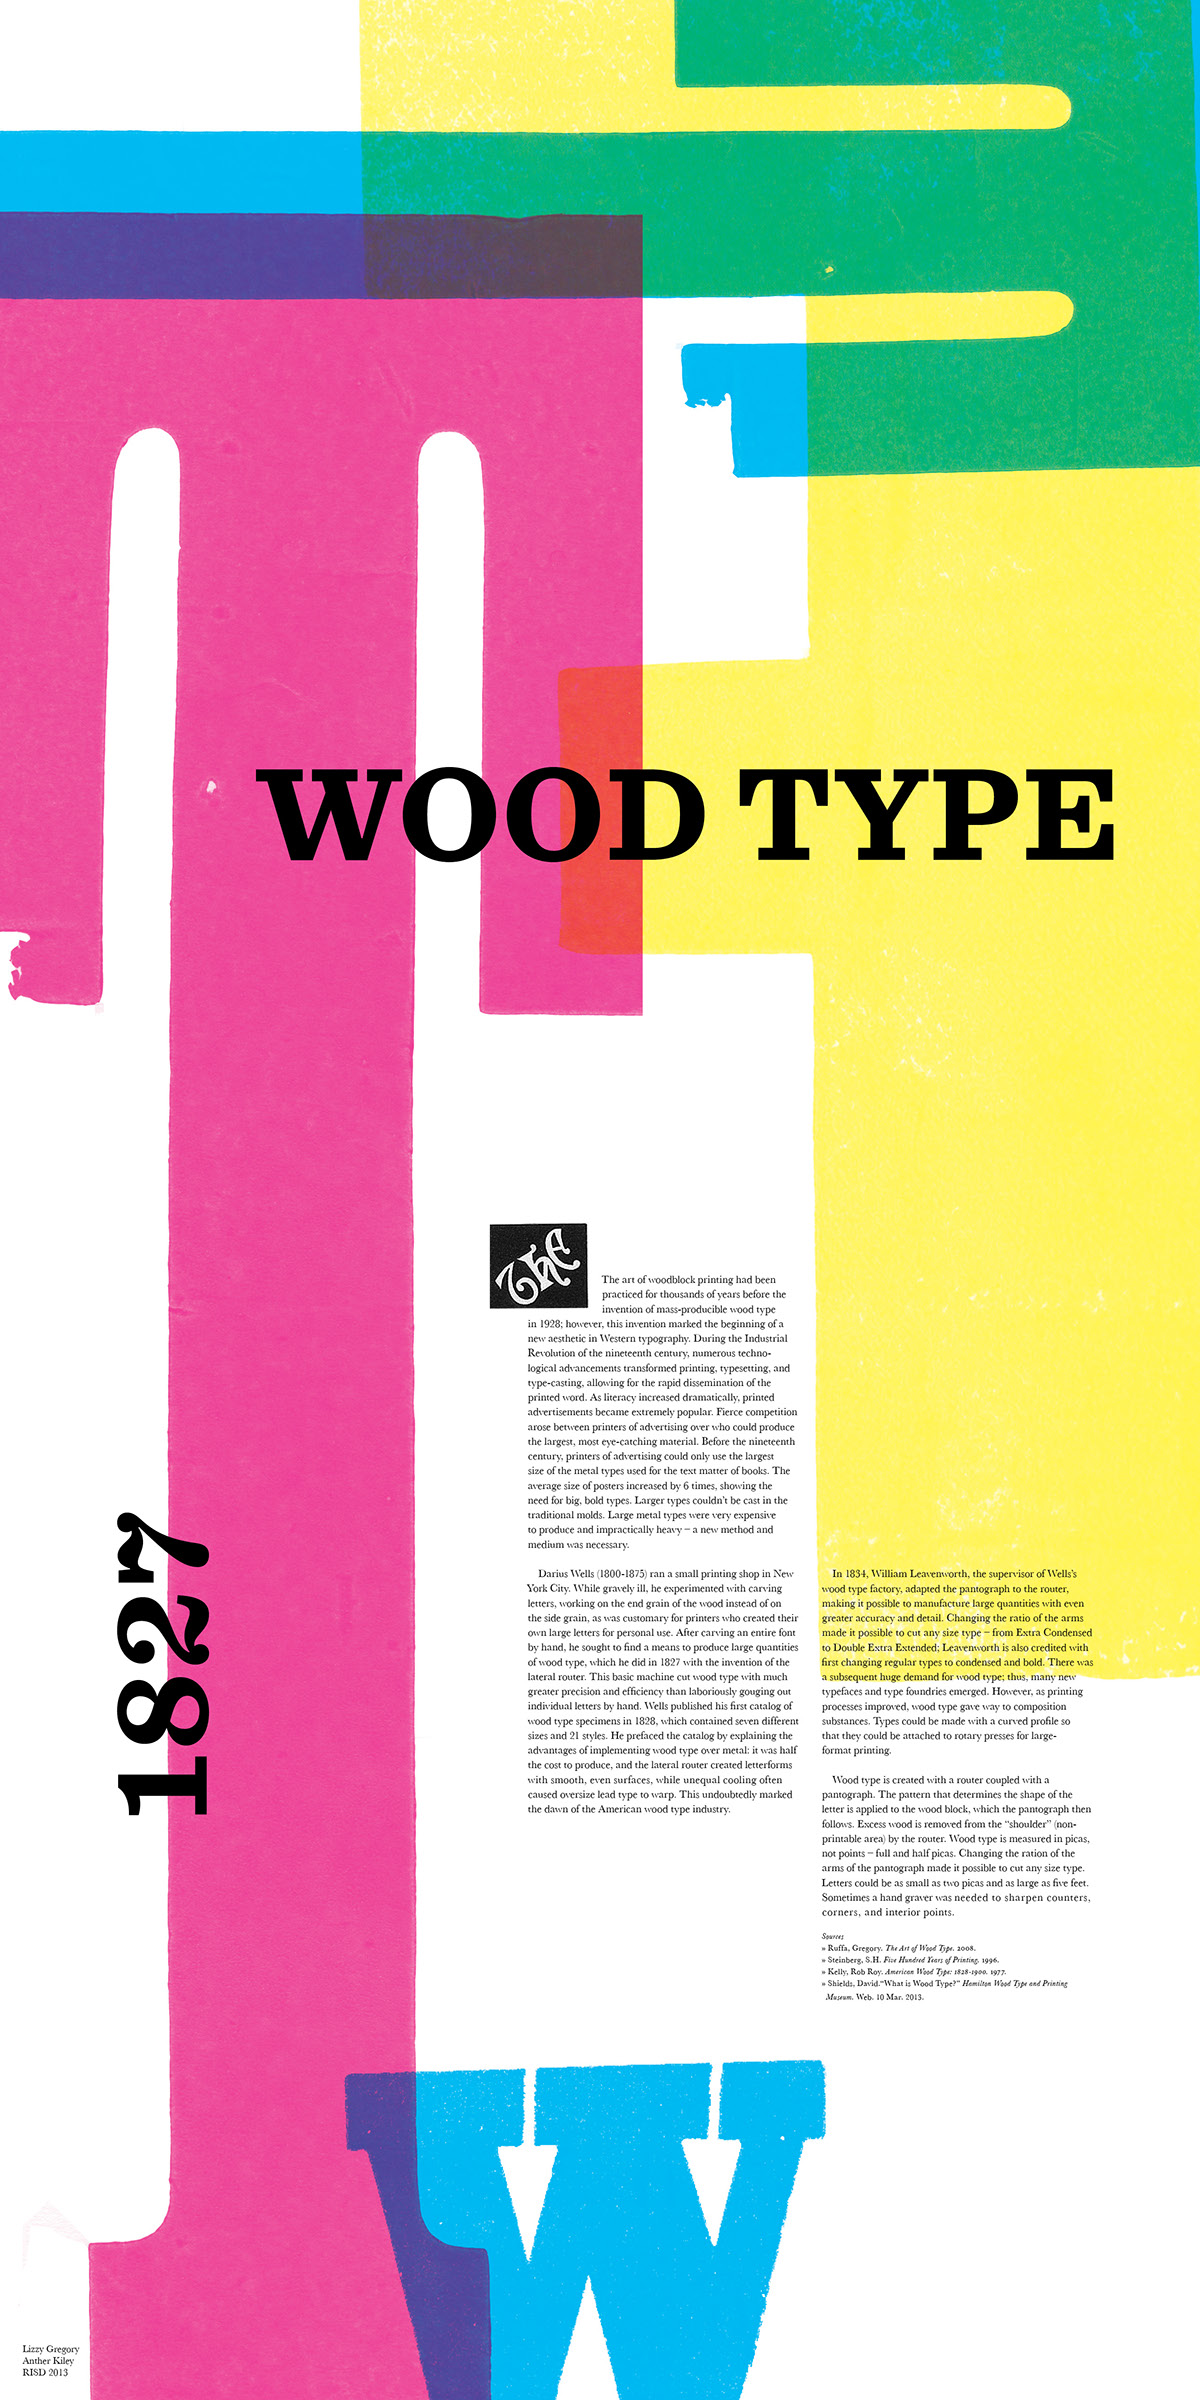 landmark poster history of gd Doug Scott letterpress wood type CMYK poster